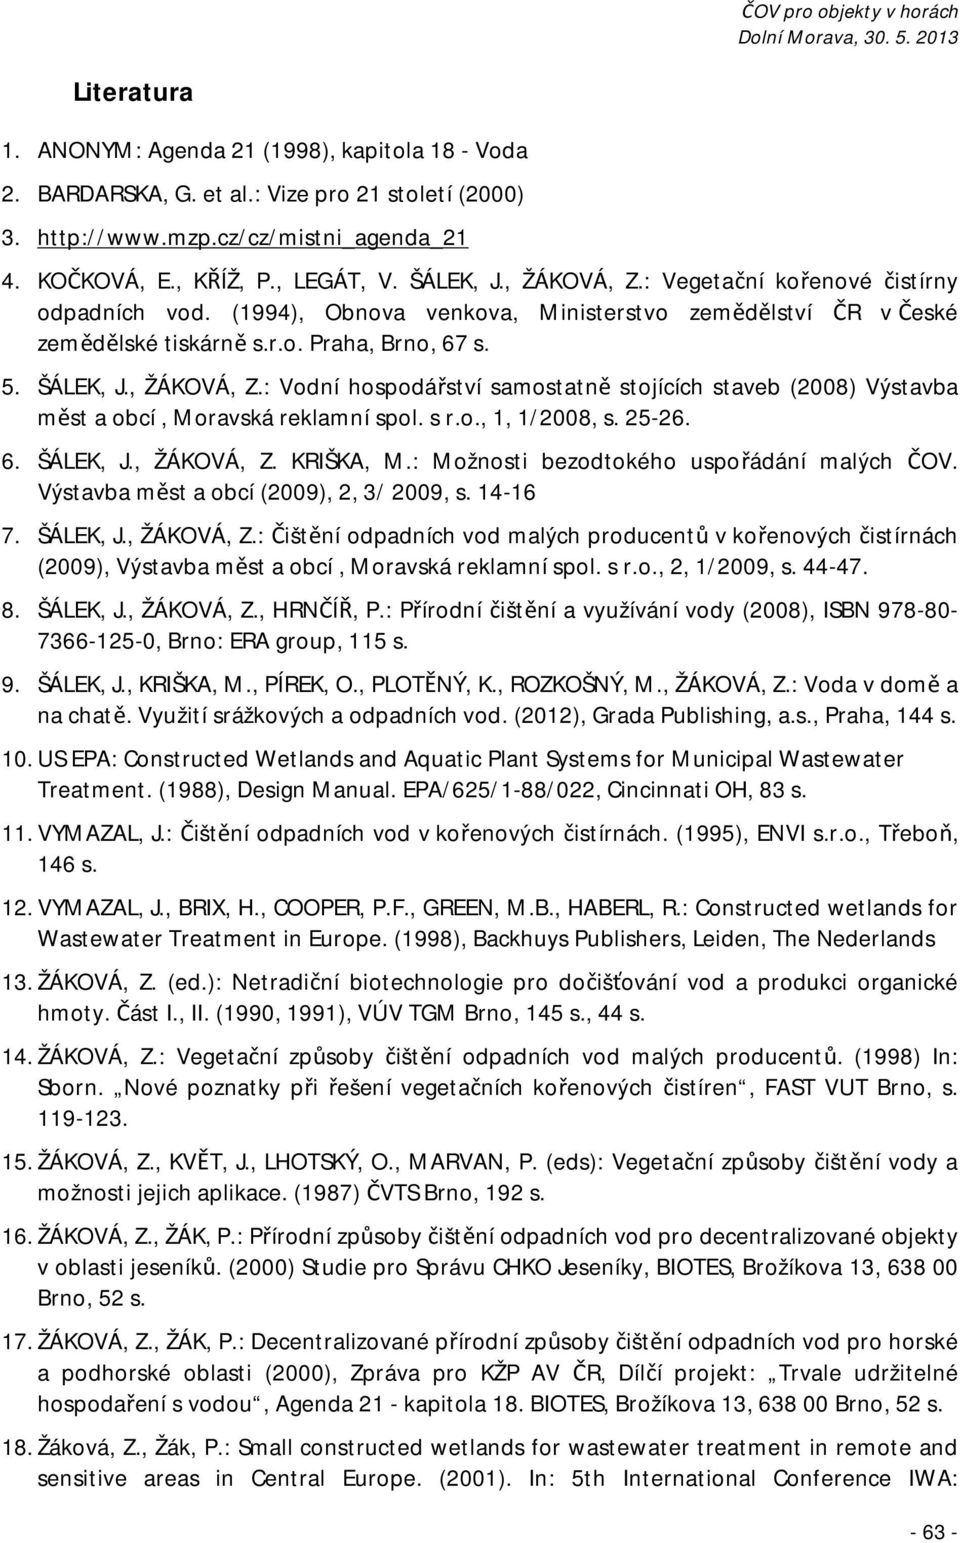 s r.o., 1, 1/2008, s. 25-26. 6. ŠÁLEK, J., ŽÁKOVÁ, Z. KRIŠKA, M.: Možnosti bezodtokého uspořádání malých ČOV. Výstavba měst a obcí (2009), 2, 3/ 2009, s. 14-16 7. ŠÁLEK, J., ŽÁKOVÁ, Z.: Čištění odpadních vod malých producentů v kořenových čistírnách (2009), Výstavba měst a obcí, Moravská reklamní spol.